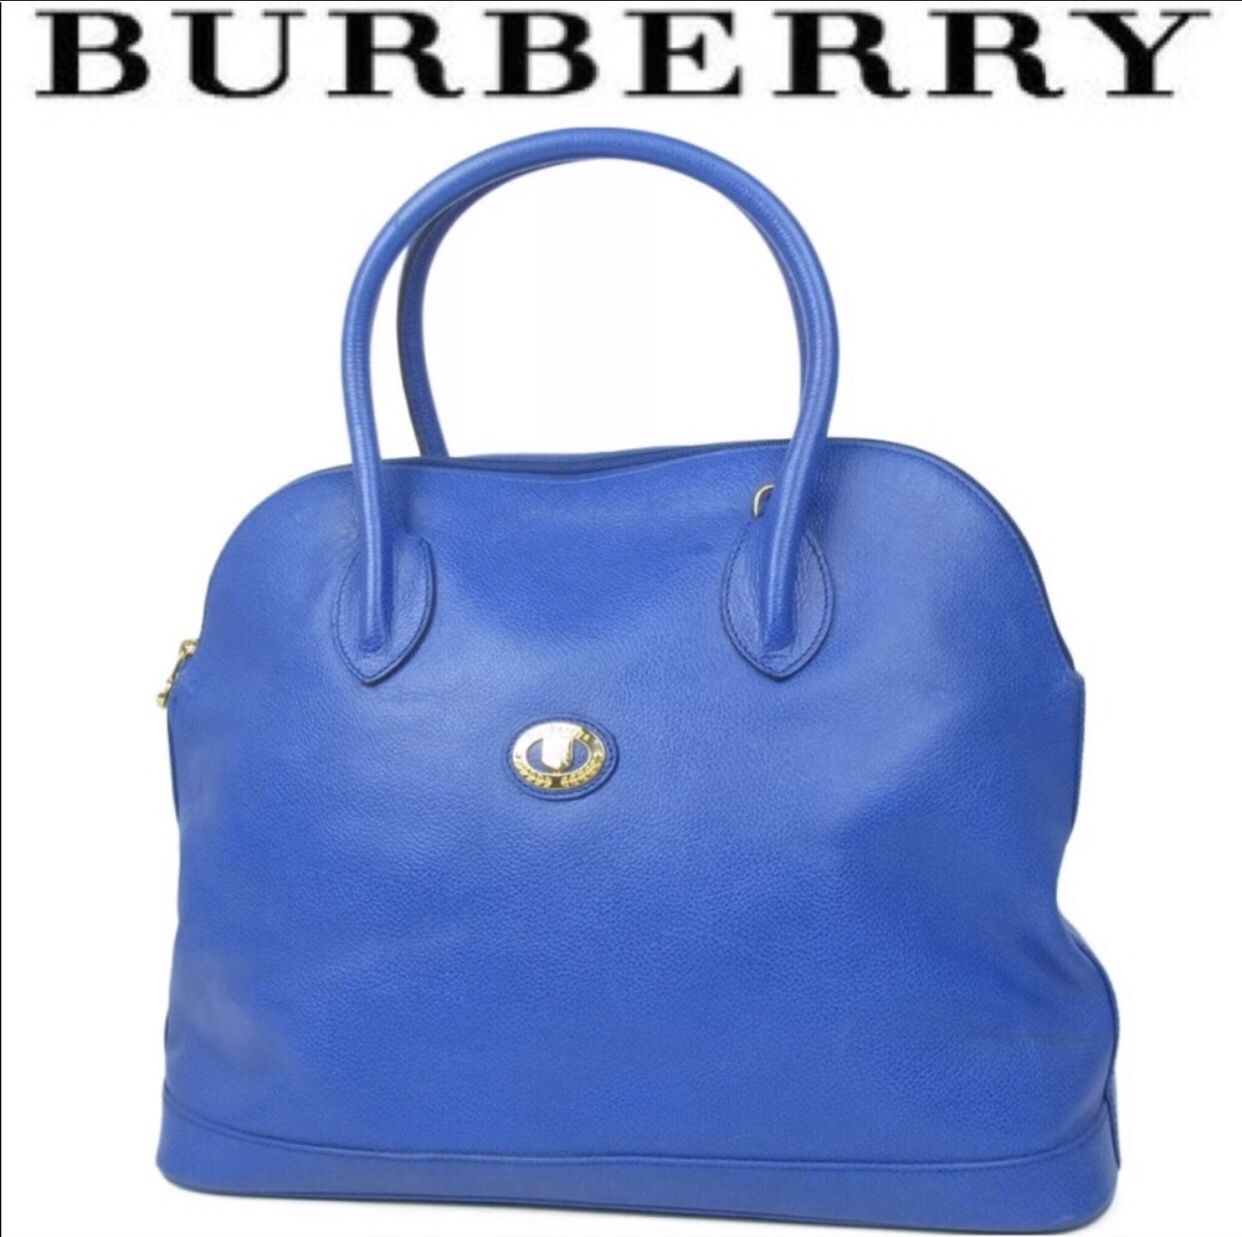 Burberry satchel